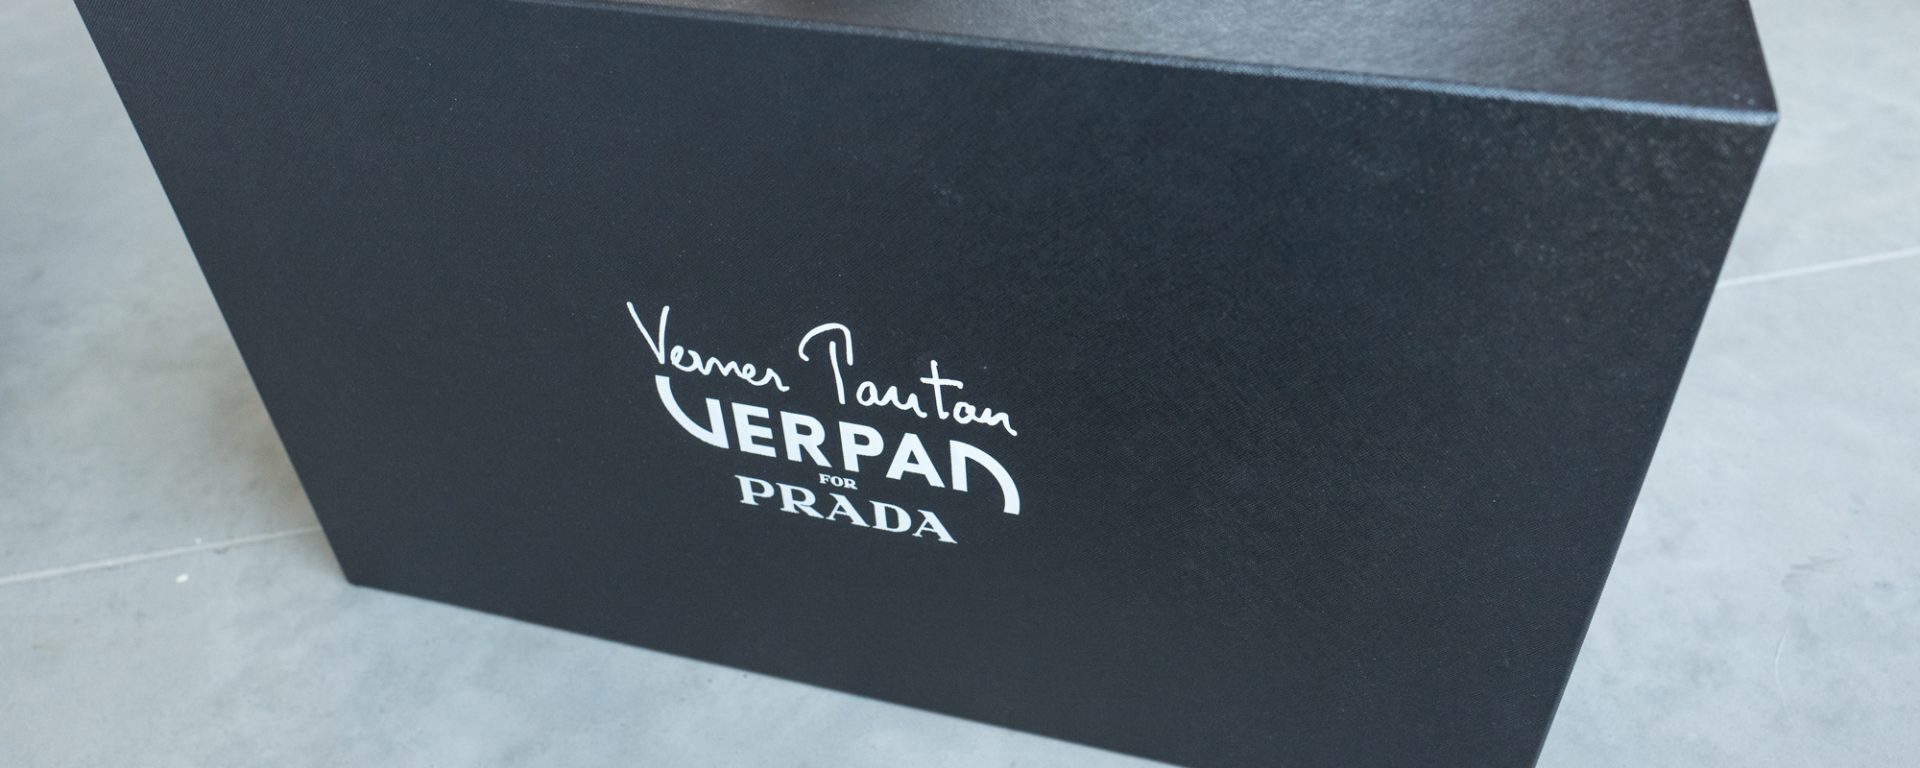 Verpan for Prada stool - Verner Panton